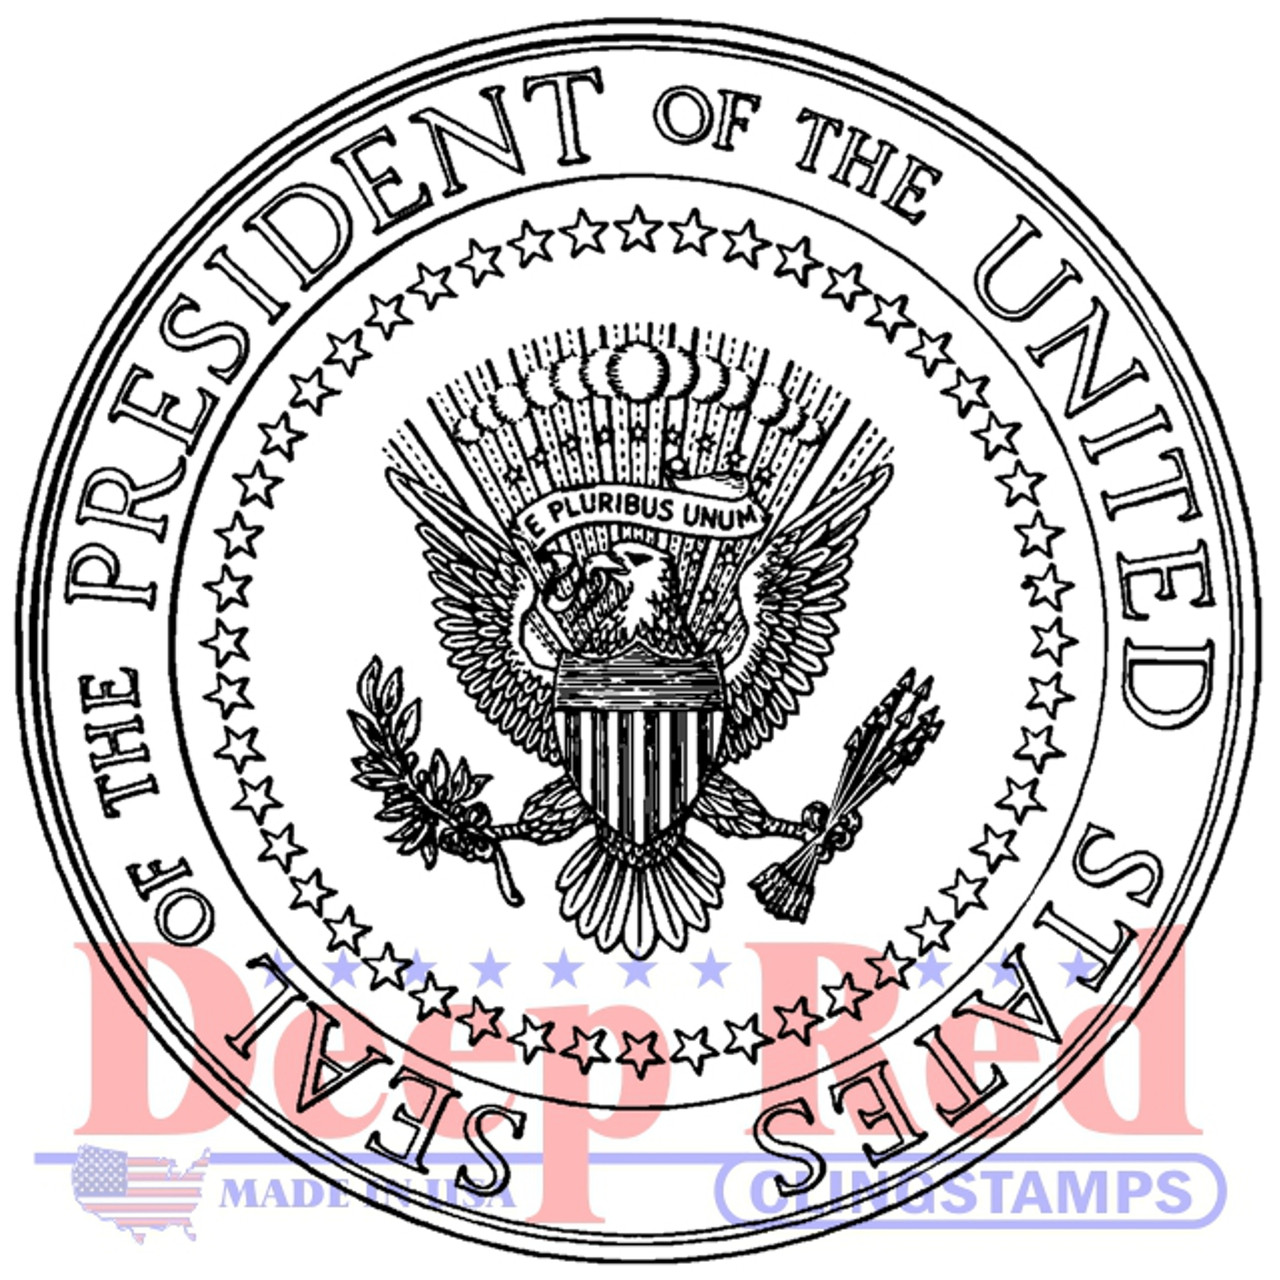 43rd Presidential Seal Stamp Dispenser